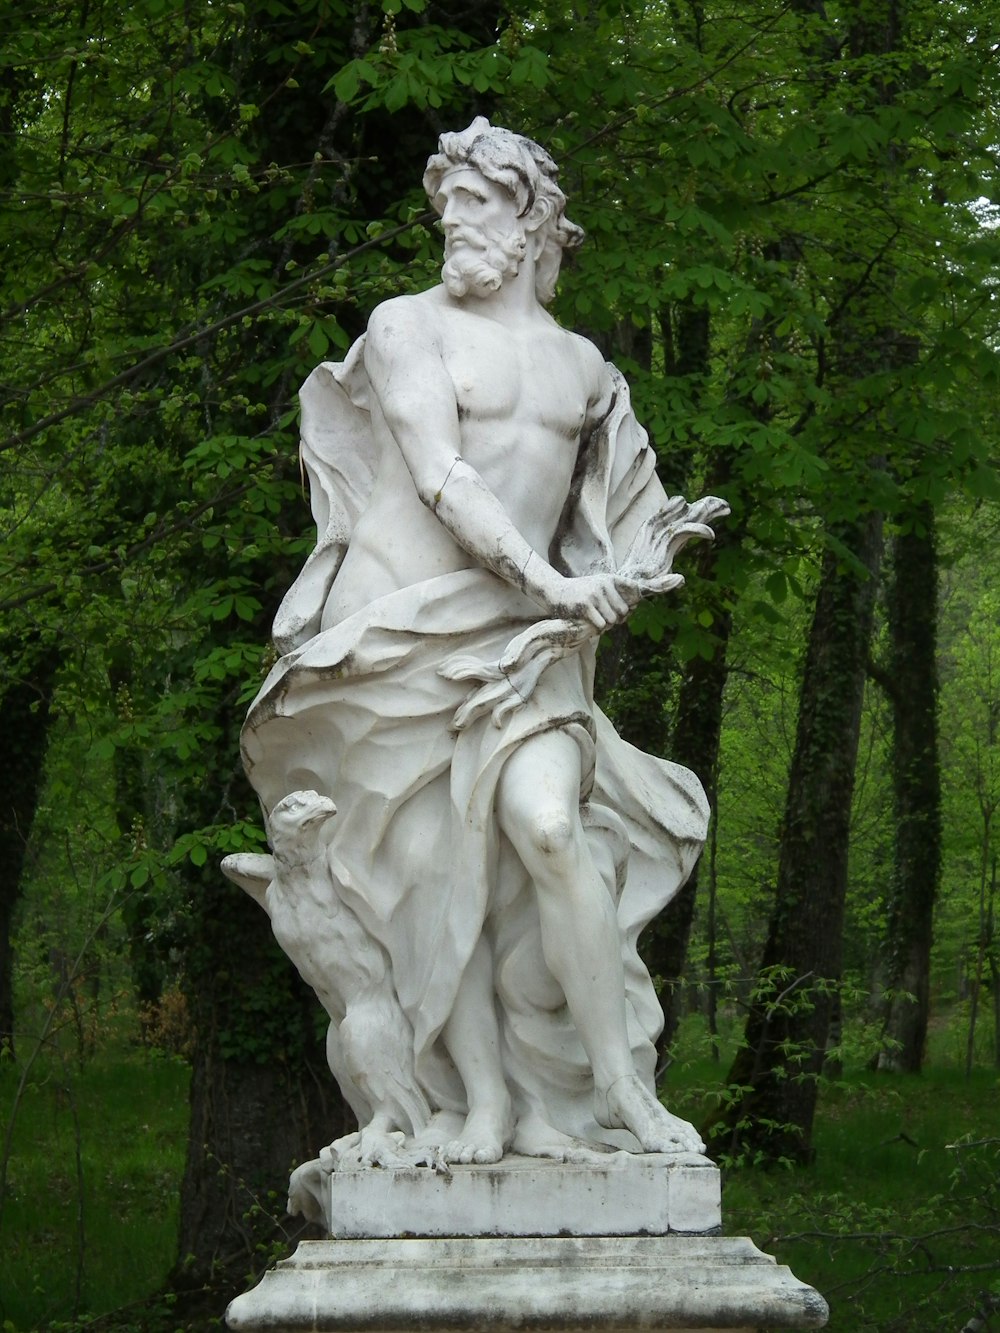 Estatua del ángel blanco cerca de los árboles verdes durante el día